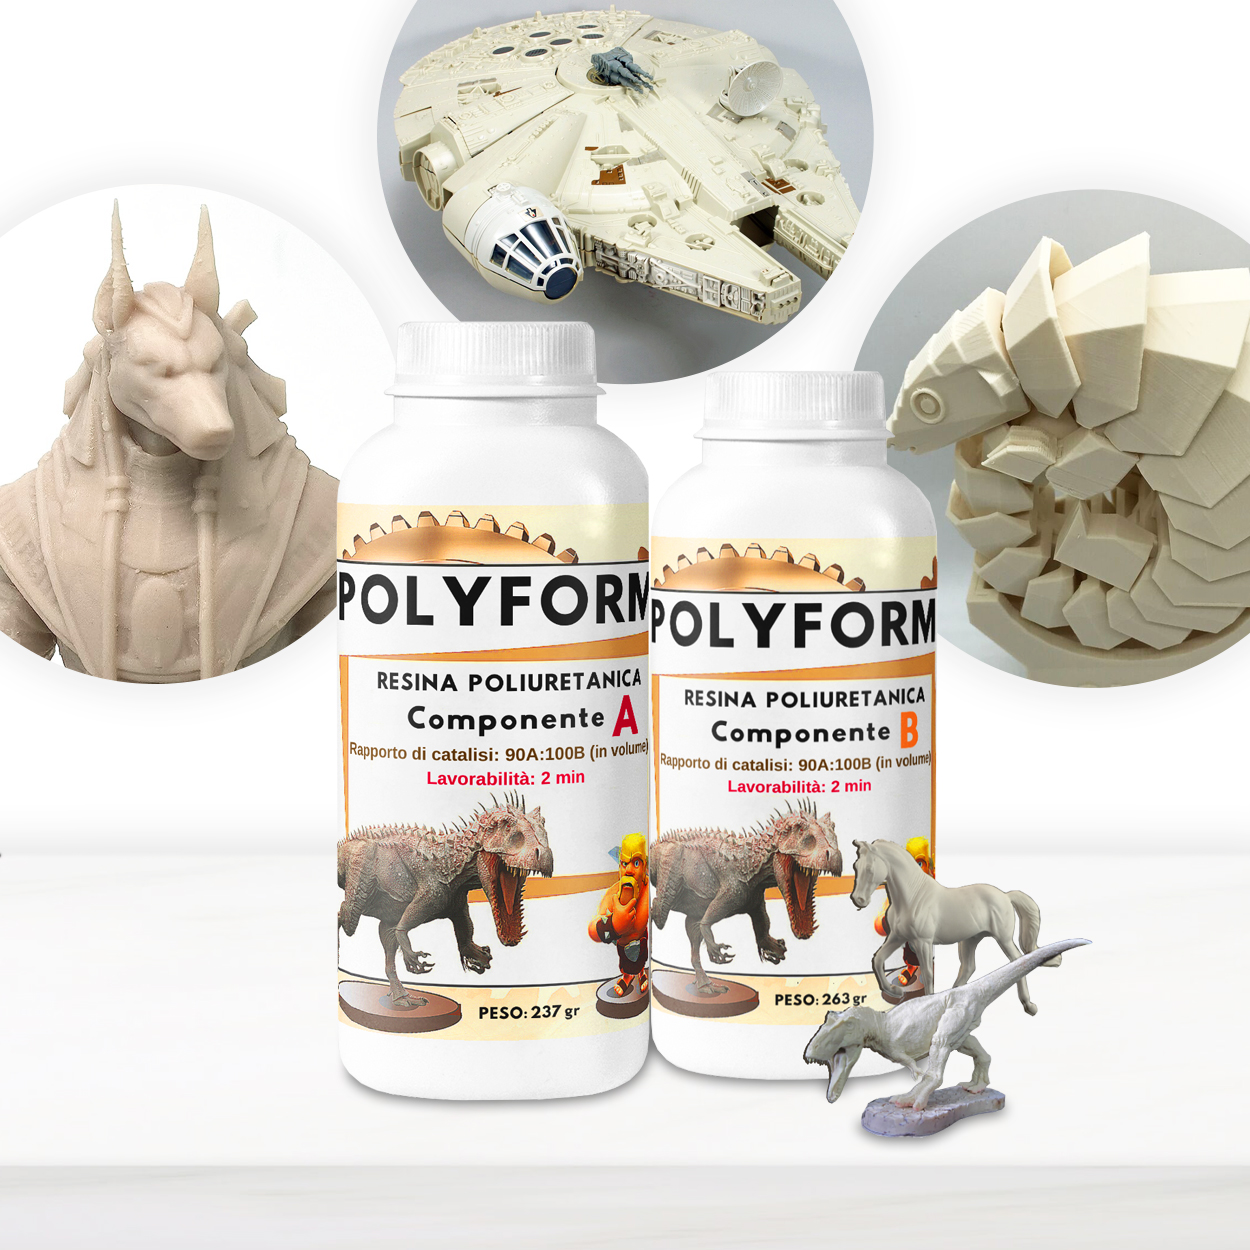 Resina PolyForm de poliuretano, certificada No Tóxica una vez curada – Lista en 10 minutos – ¡Calidad al mejor precio!